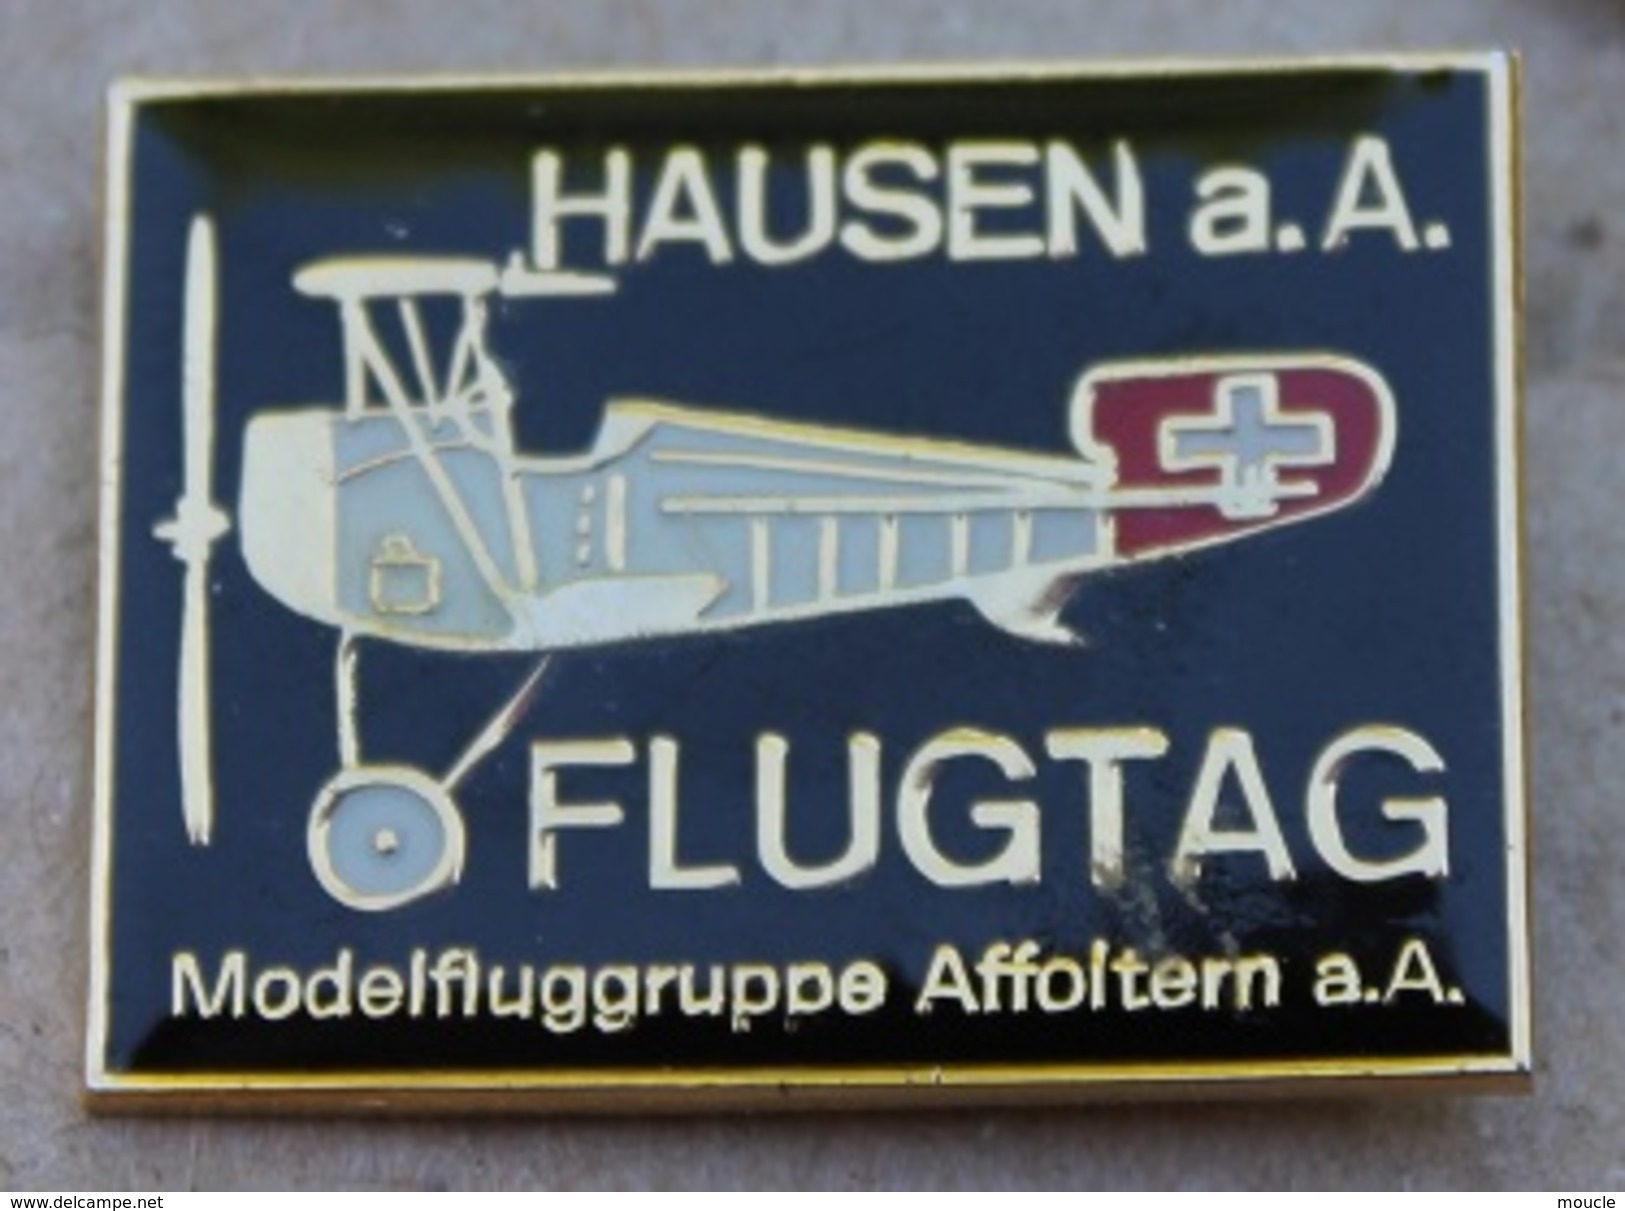 AVION - HAUSEN A.A FLUGTAG - MODELFLUGGRUPPE AFFOLTERM A.A - SCHWEIZ - SUISSE -    (JAUNE) - Vliegtuigen